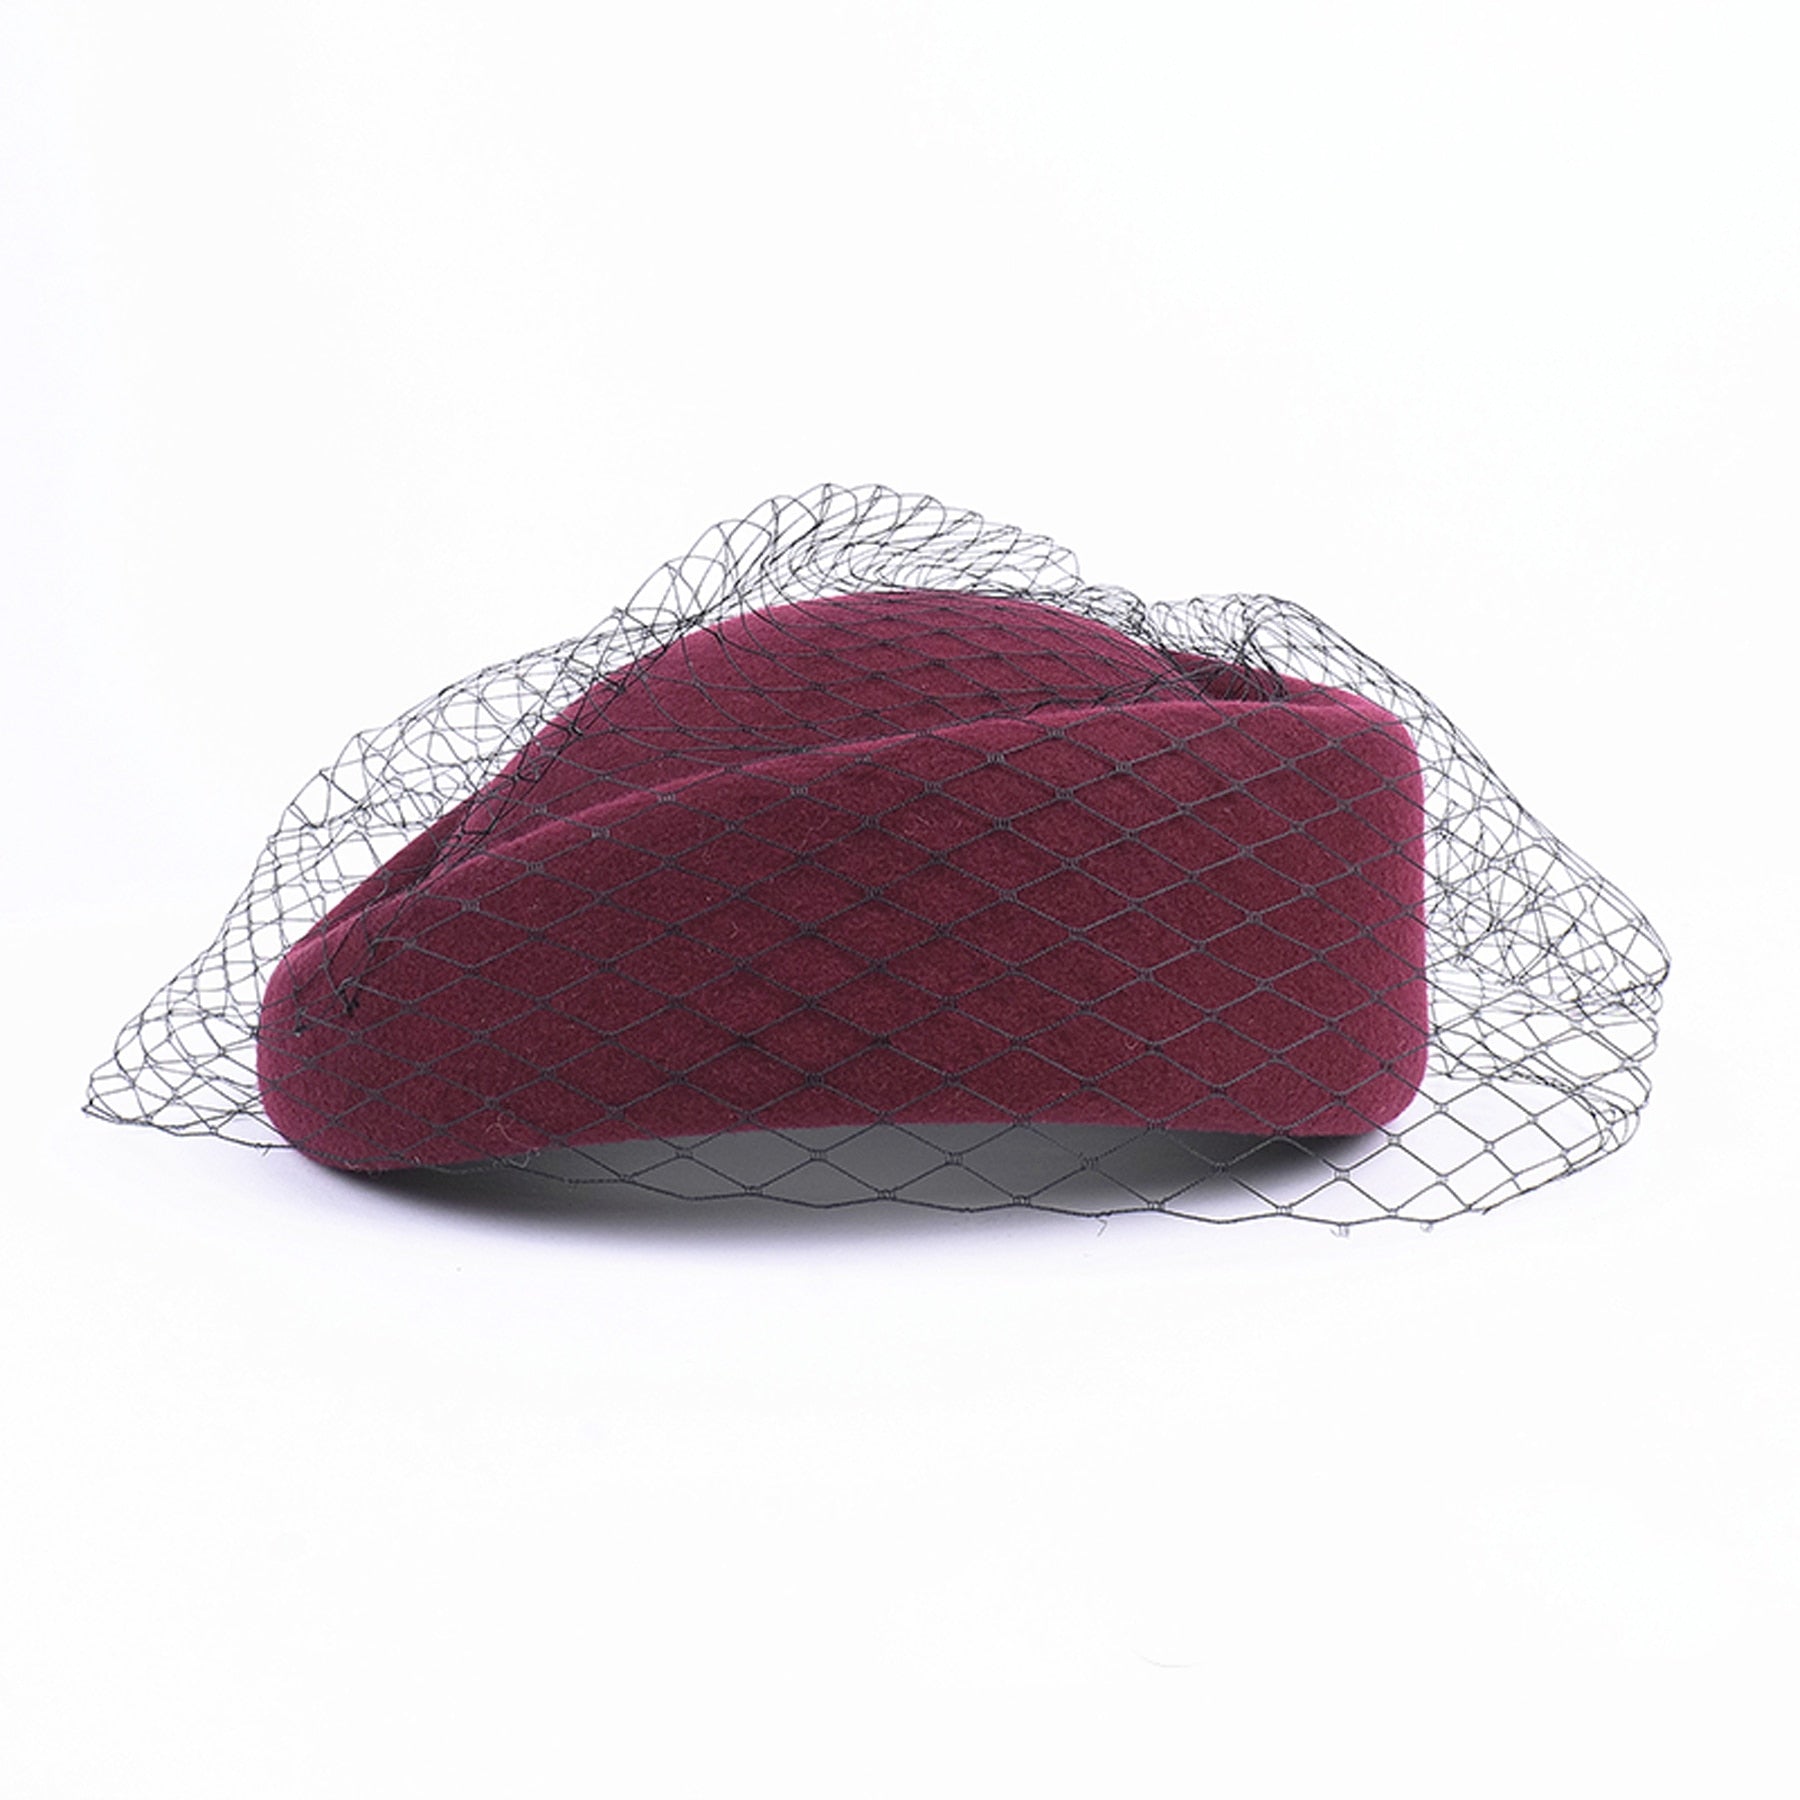 Luxury British Wool Hat With Veil